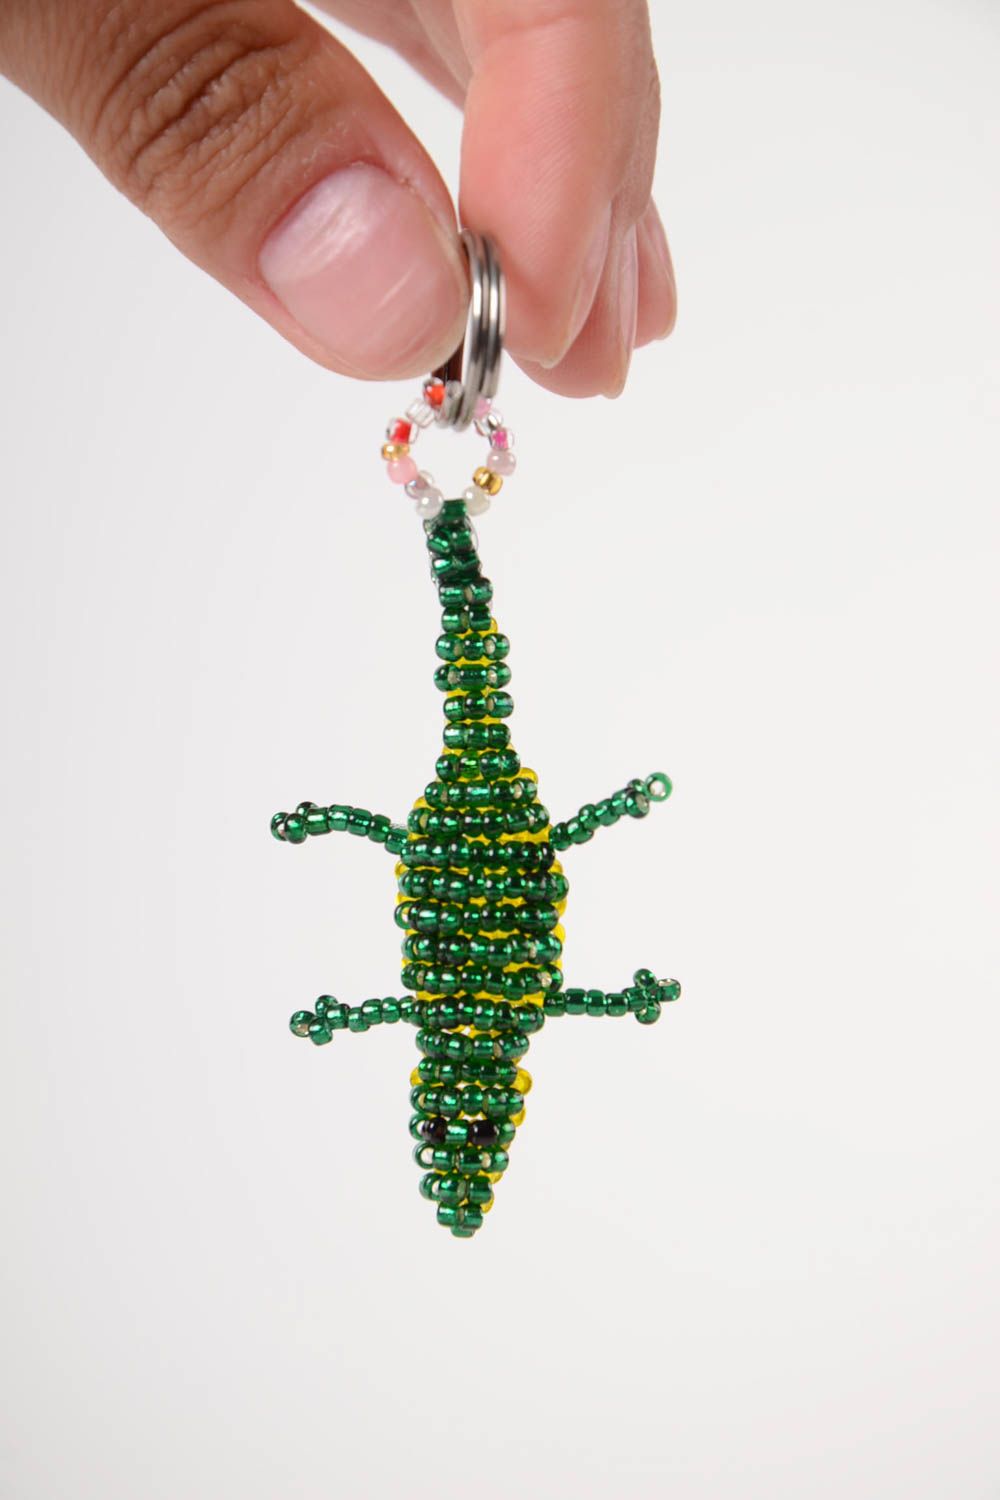 Брелок для ключей из бисера ручной работы красивый в виде ящерицы авторский фото 2